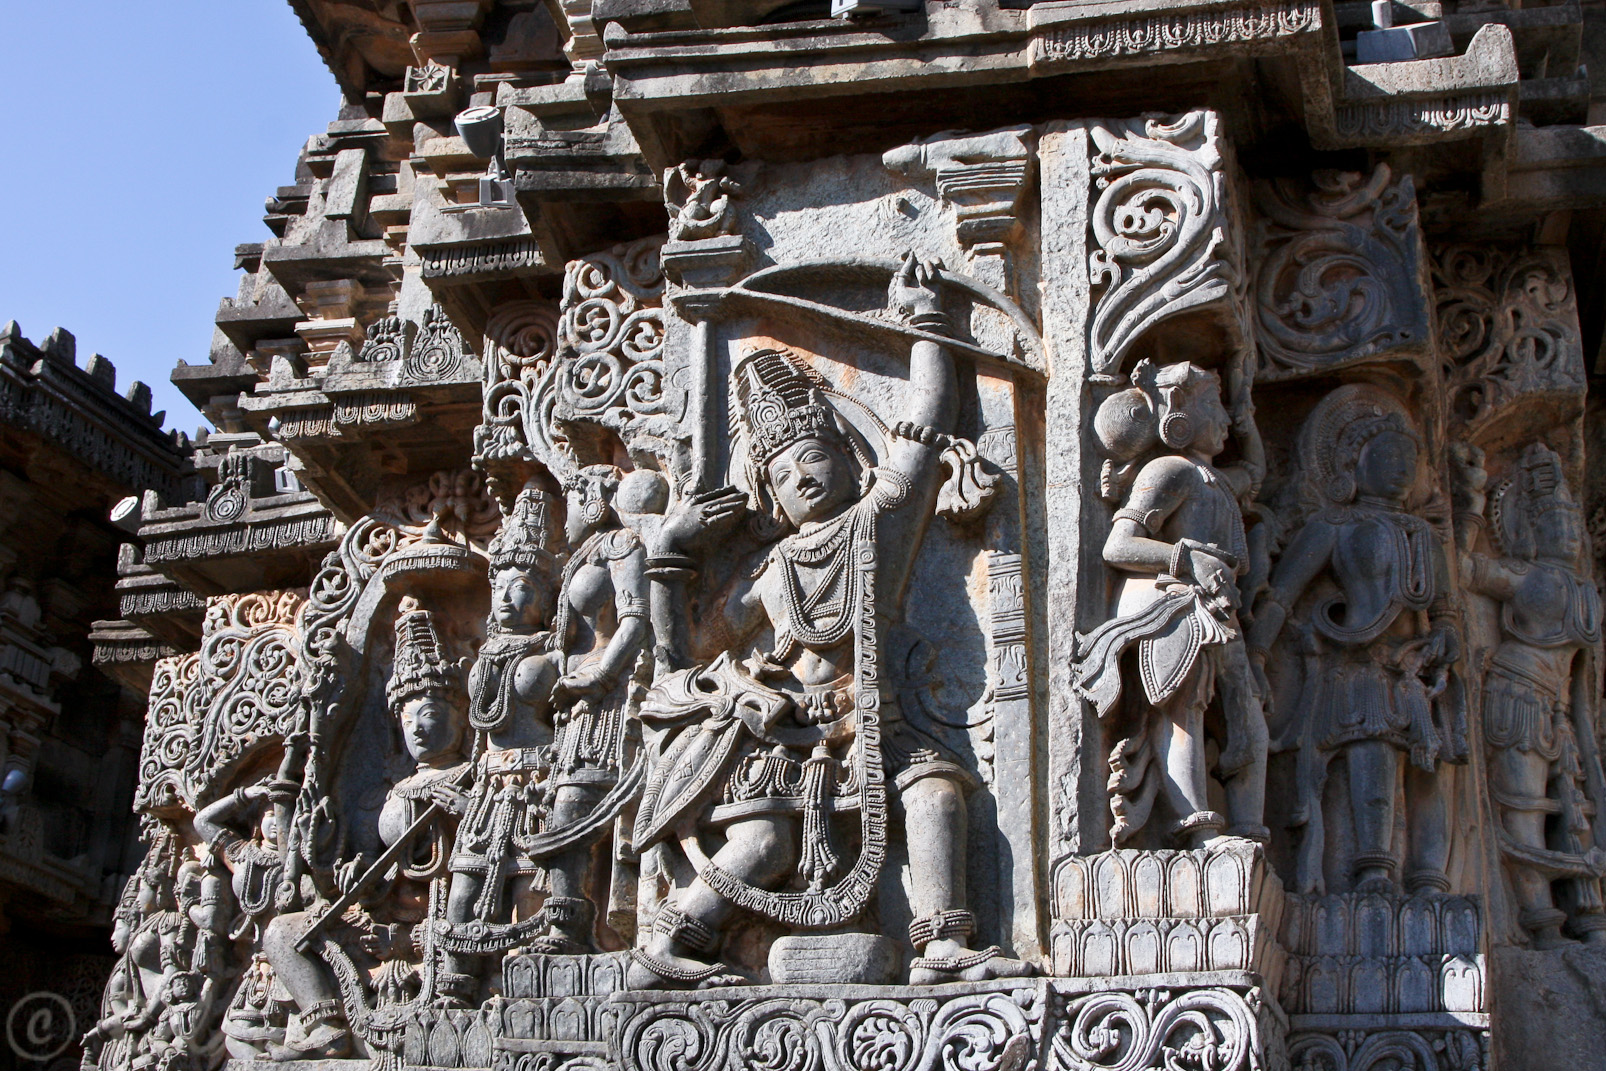 Halebid, temple de Hoysaleswara: Râma tire une flèche avec l'arc de Vishnou, ce qui prouve qu'il est bien un avatar de Vishnou.